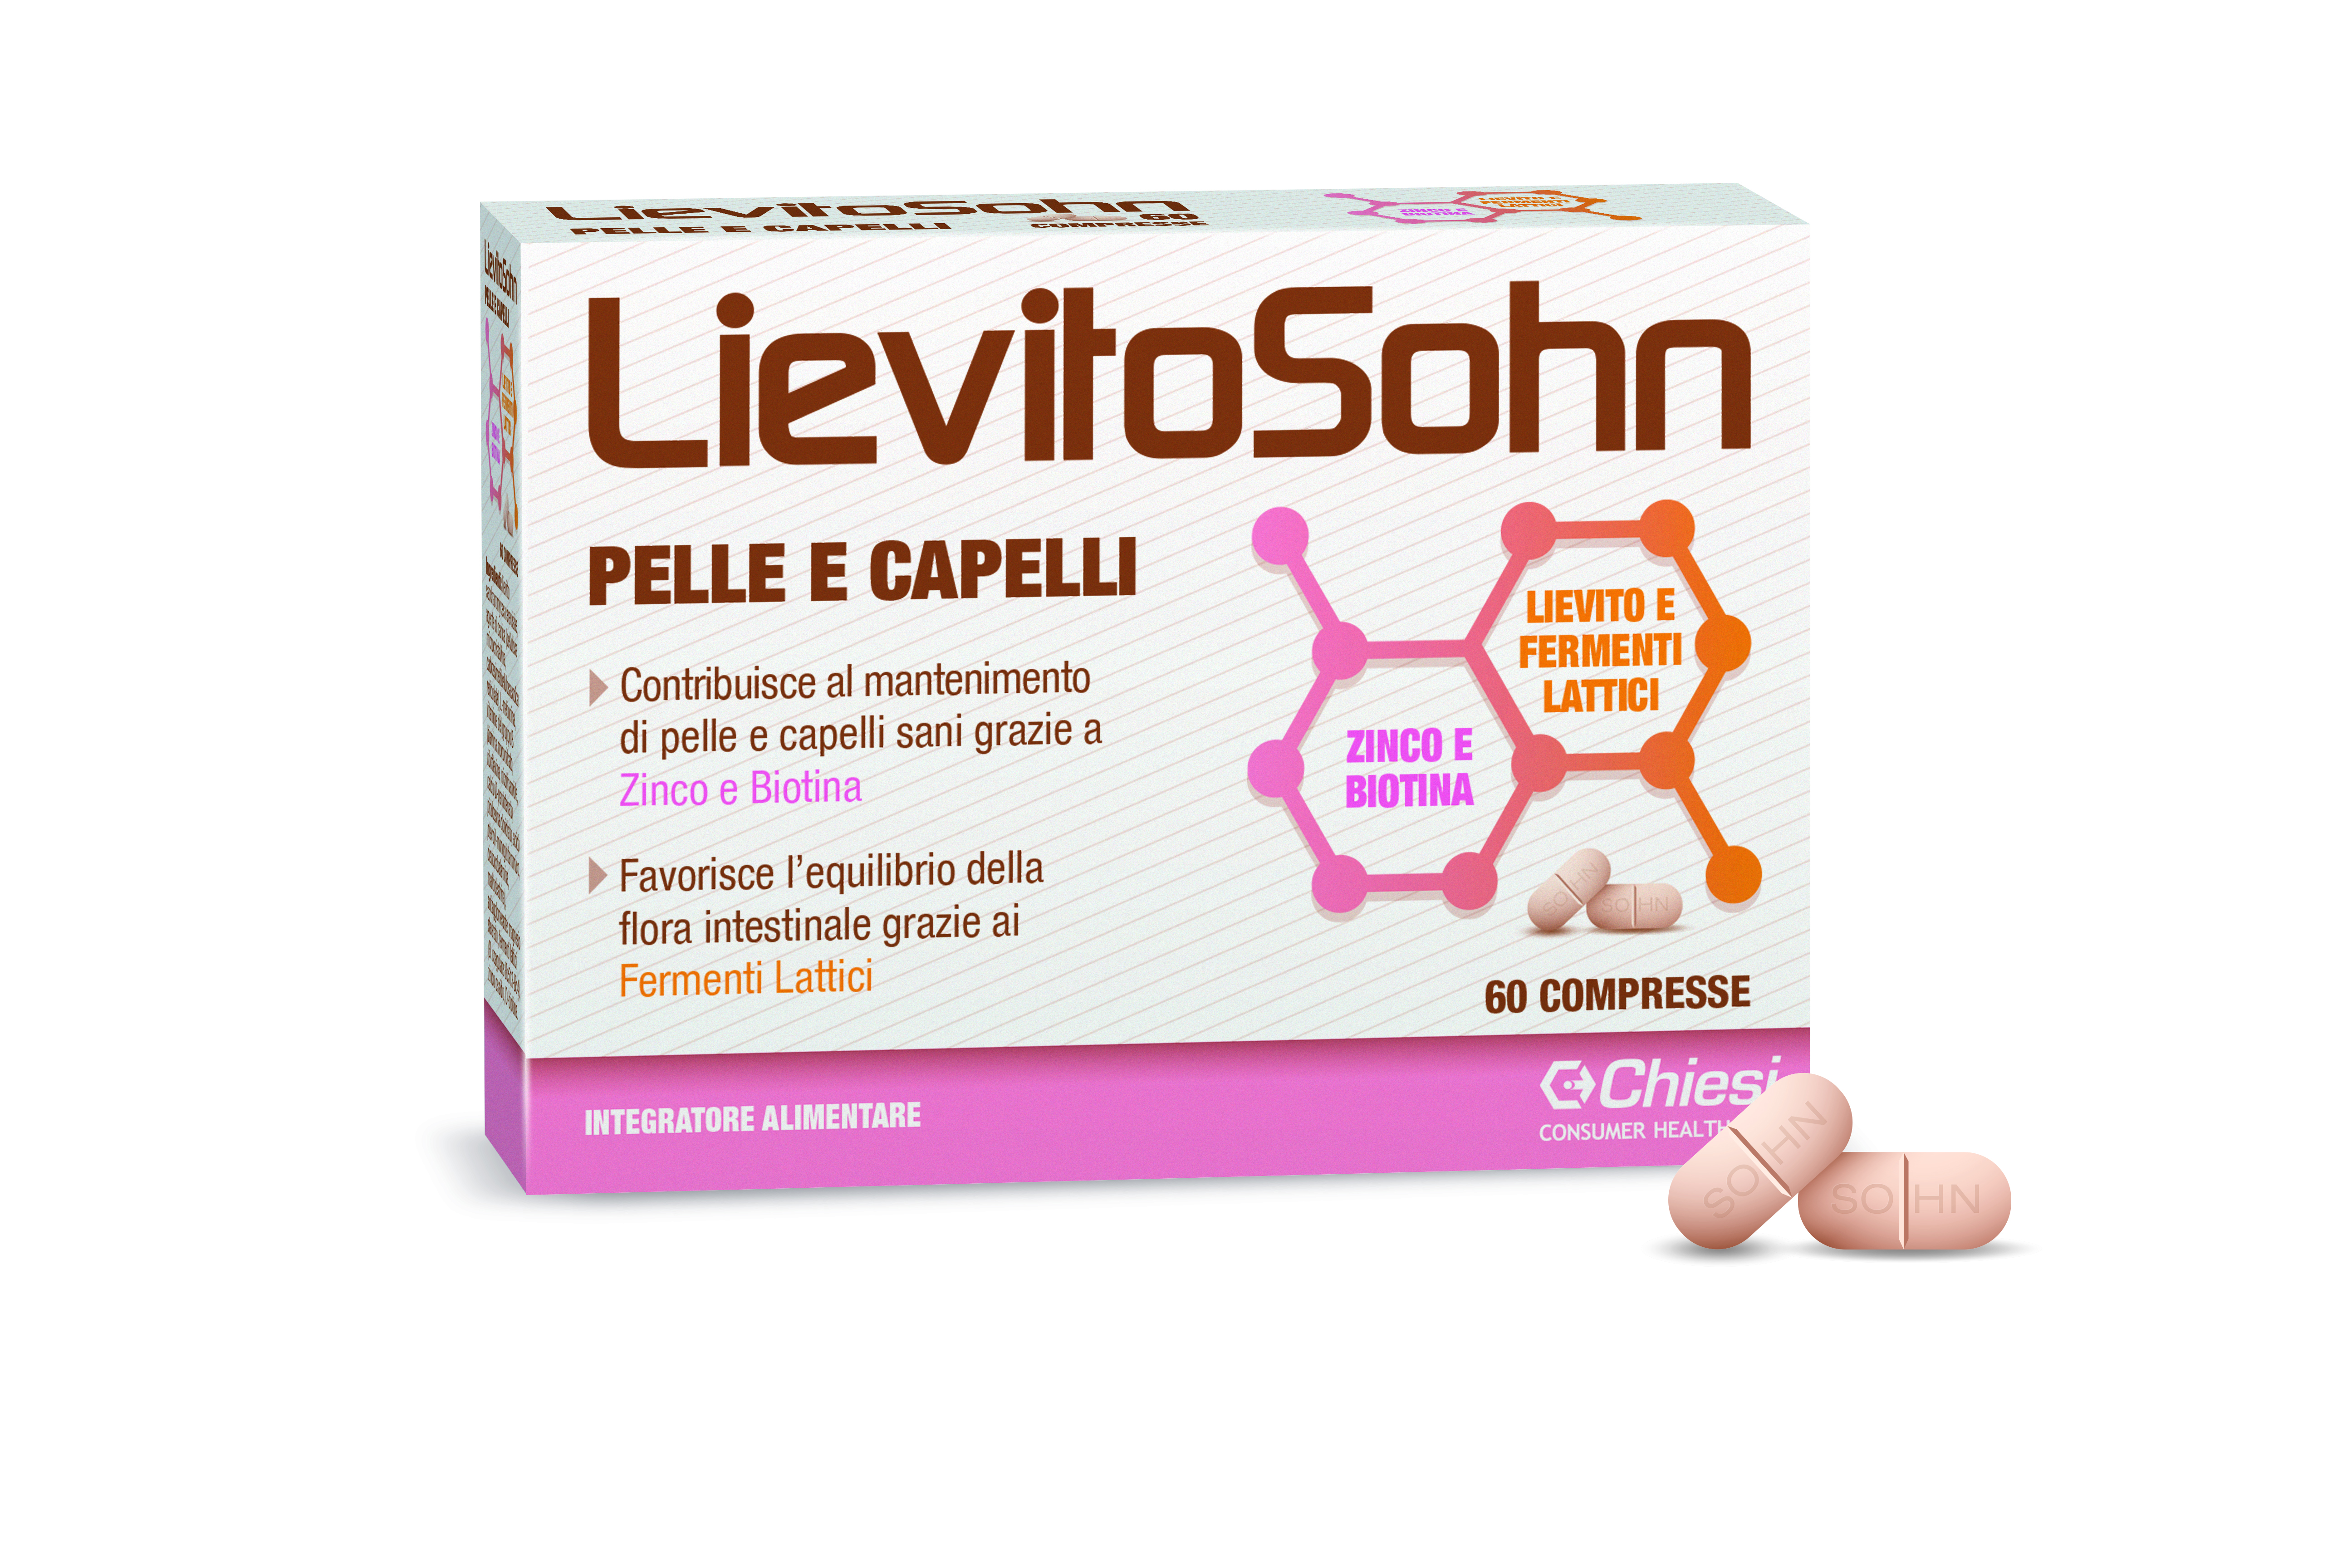 Immagine della confezione di Lievitosohn compresse, integratore di Chiesi Farmaceutici S.p.A.